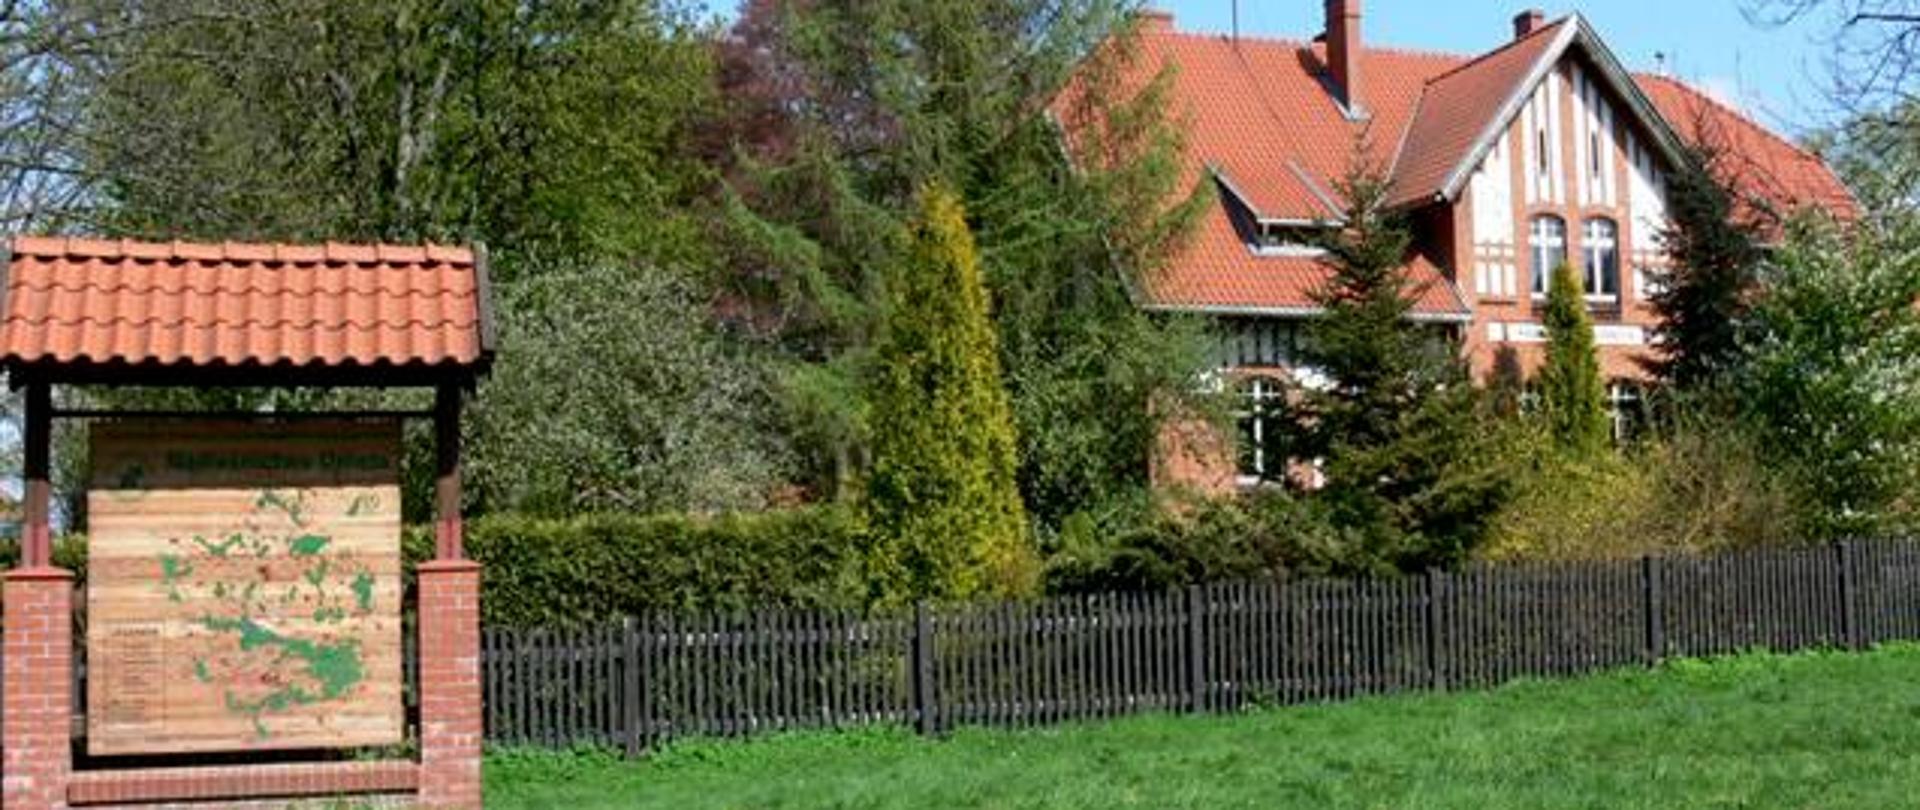 Budynek - siedziba nadleśnictwa z czerwonej cegły, kryty dachówką, w lewym dolnym rogu tablica informacyjna z mapa, przed budynkiem rosną drzewa: świerkowe, modrzew i krzewy ozdobne.